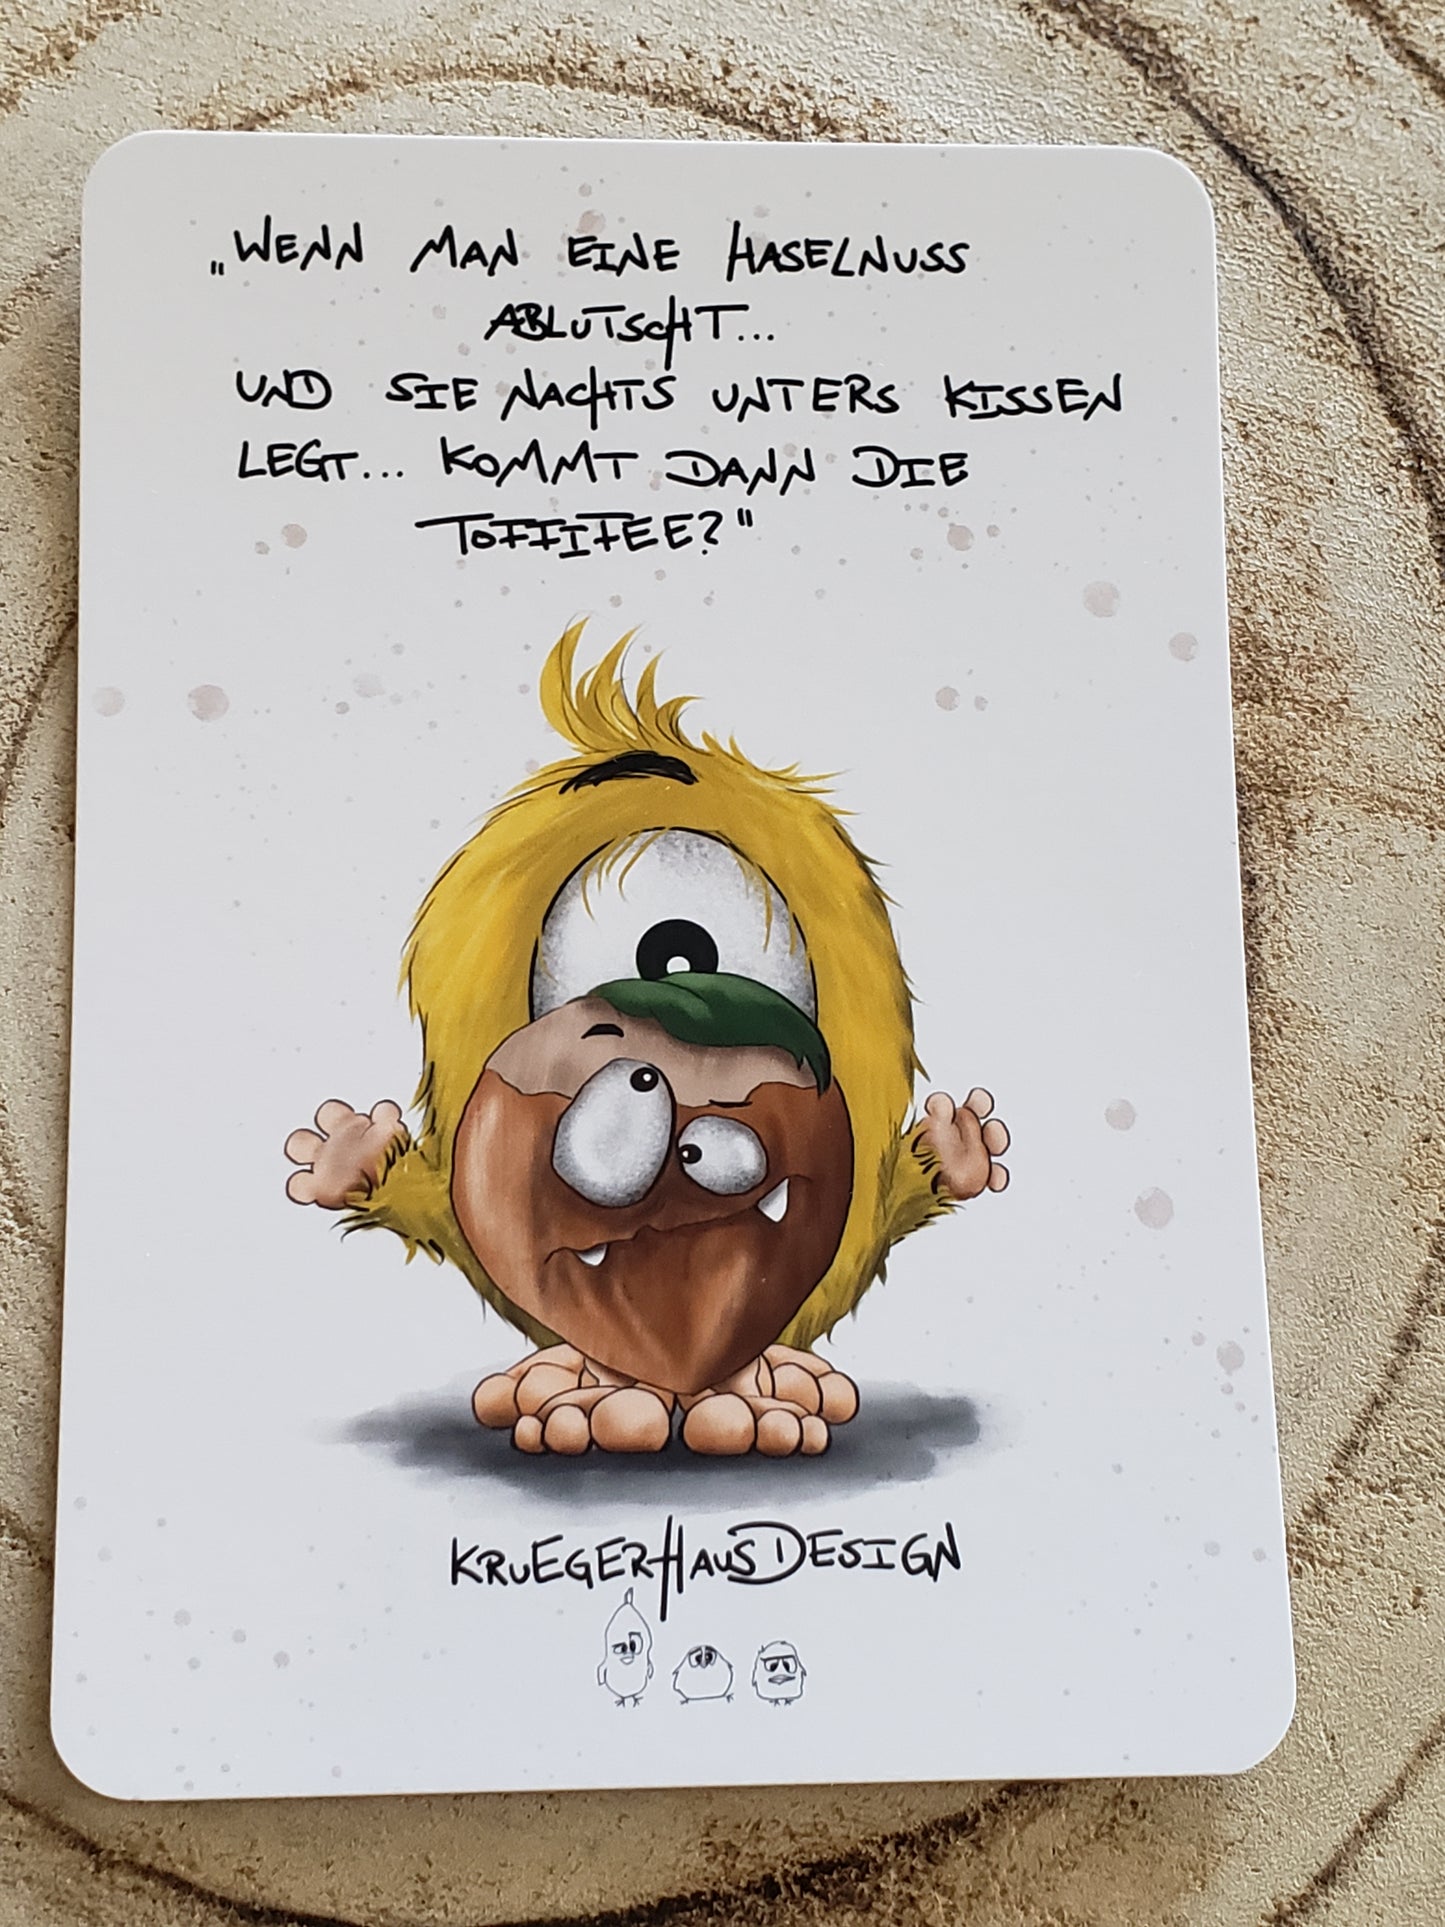 Postkarte Monster Kruegerhausdesign mit Spruch "Wenn man eine Haselnuss..."